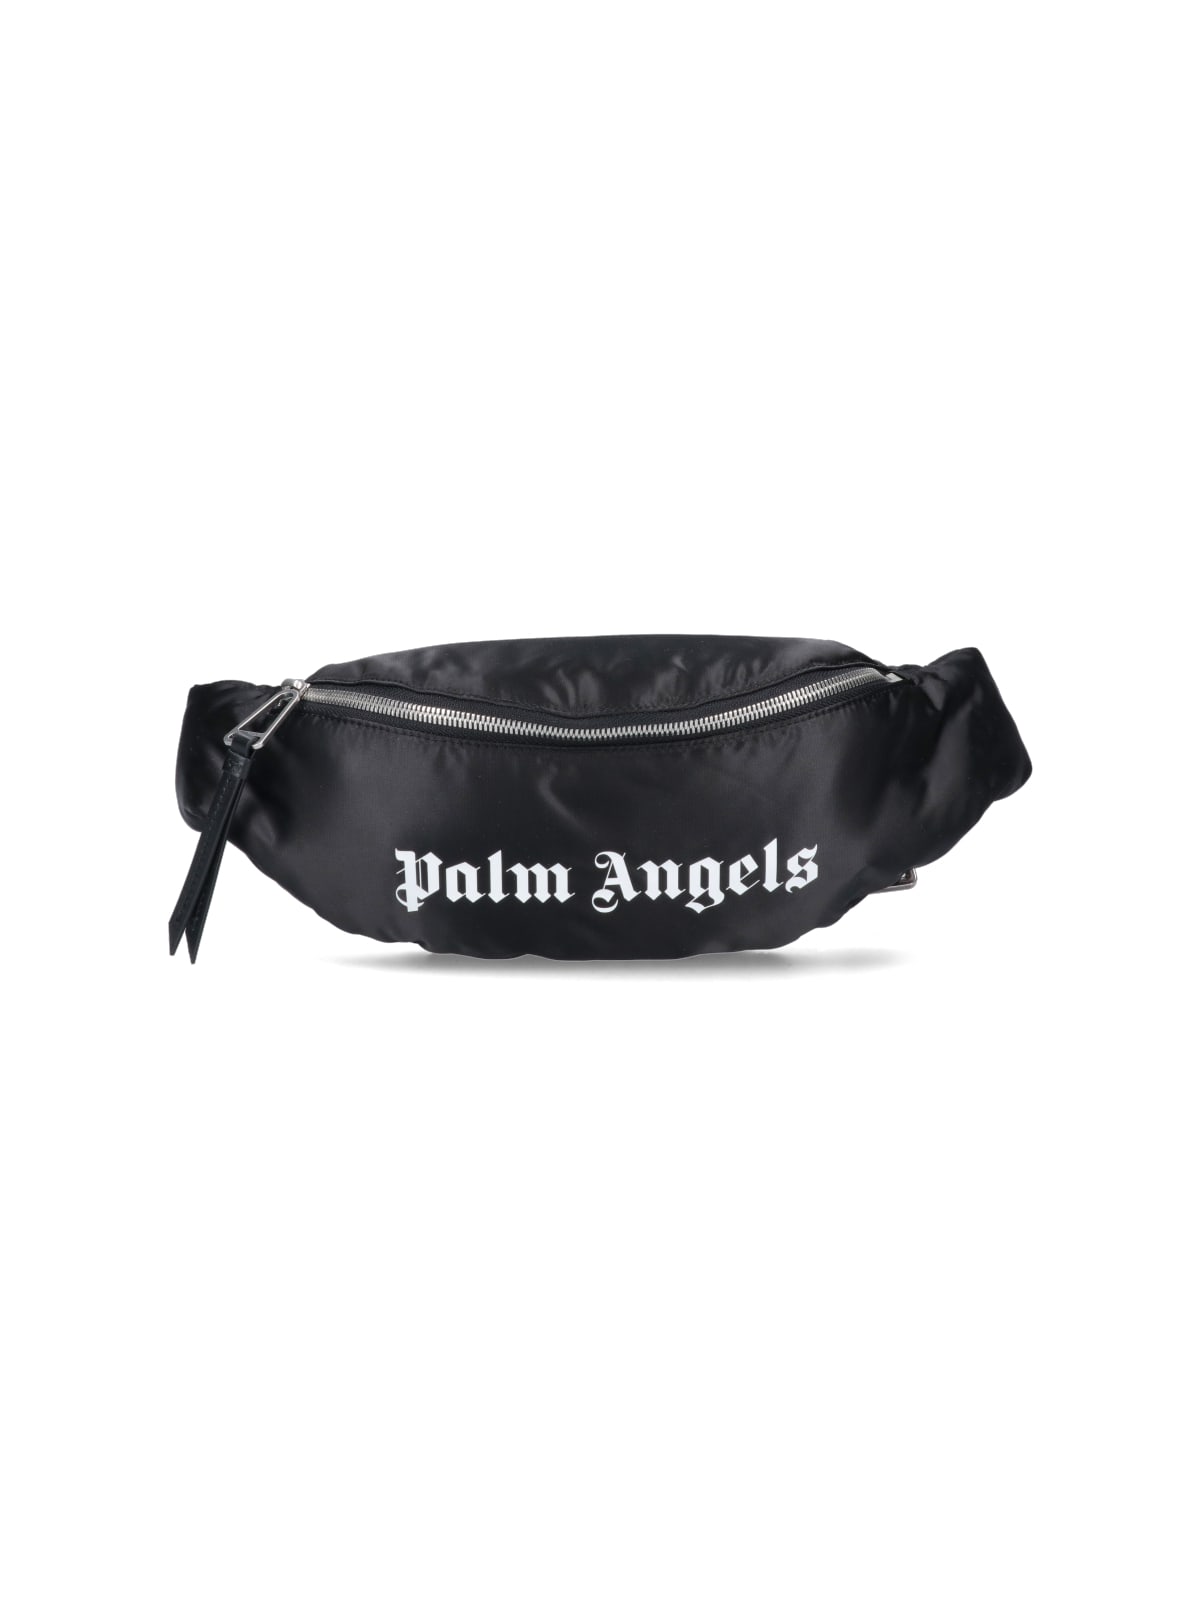 Palm Angels Belt Bag